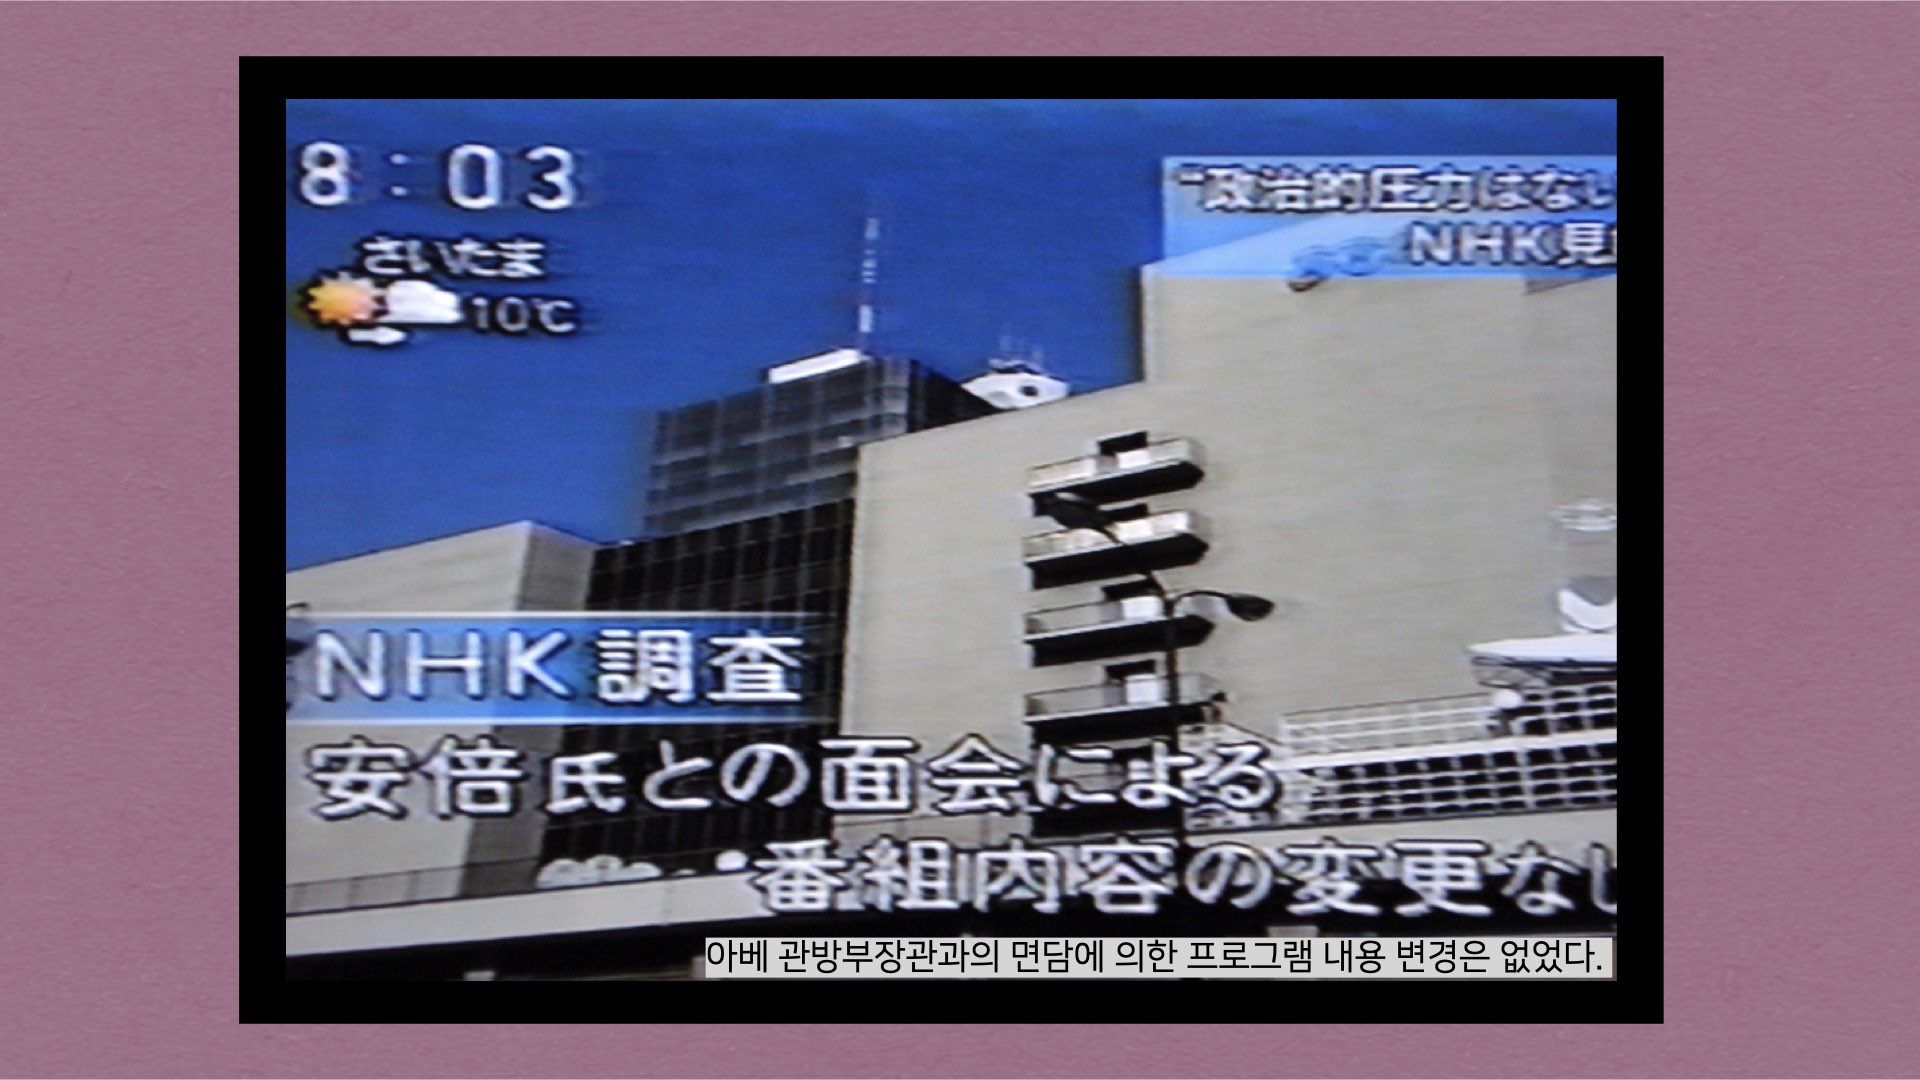 2015년 1월 14일 아침뉴스에서 NHK는 아베 관방부장관과의 면담에 의한 프로그램 내용 변경은 없었다라고 보도했다.